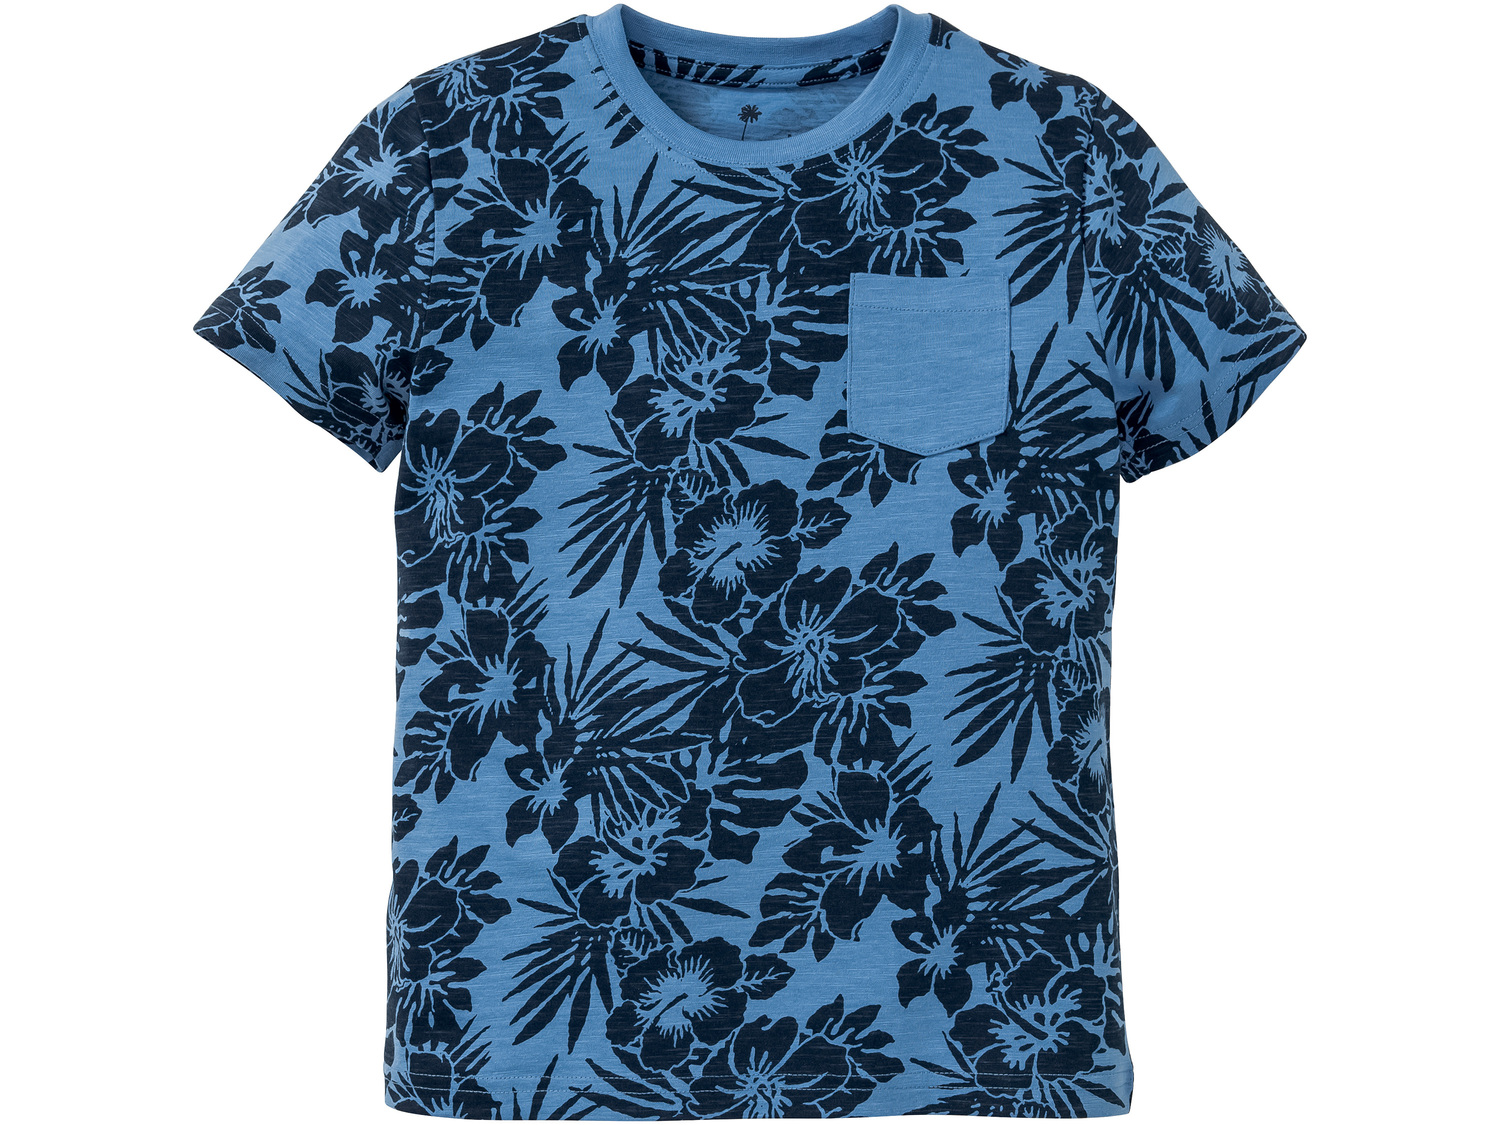 T-shirt chłopięcy Lupilu, cena 9,00 PLN 
różne wzory i rozmiary 
- 100% bawełny
Opis

- ...